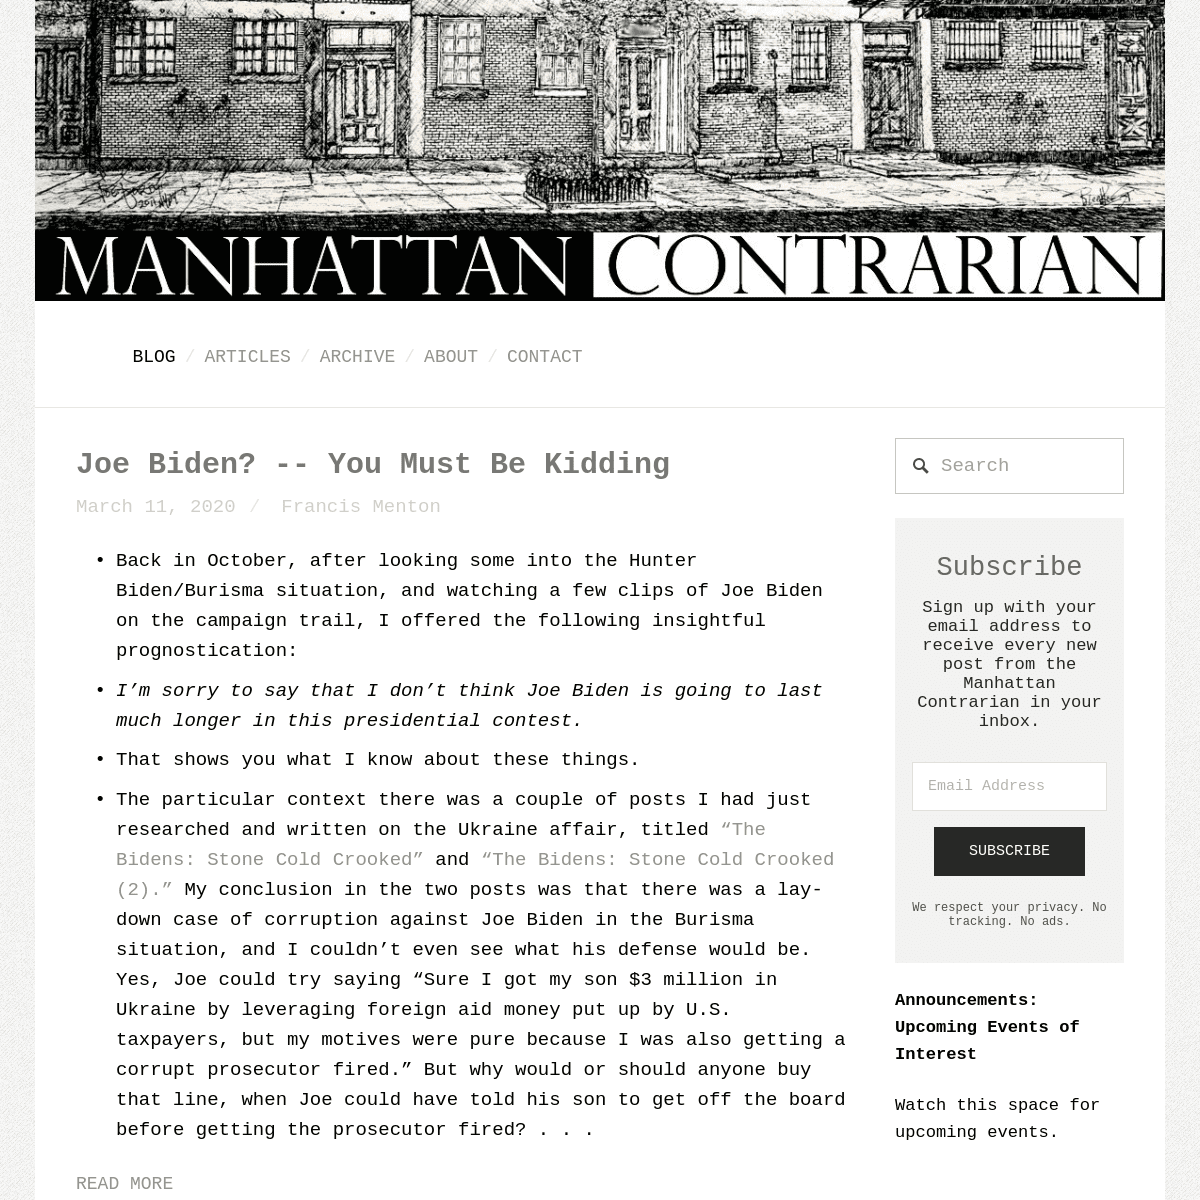 A complete backup of manhattancontrarian.com